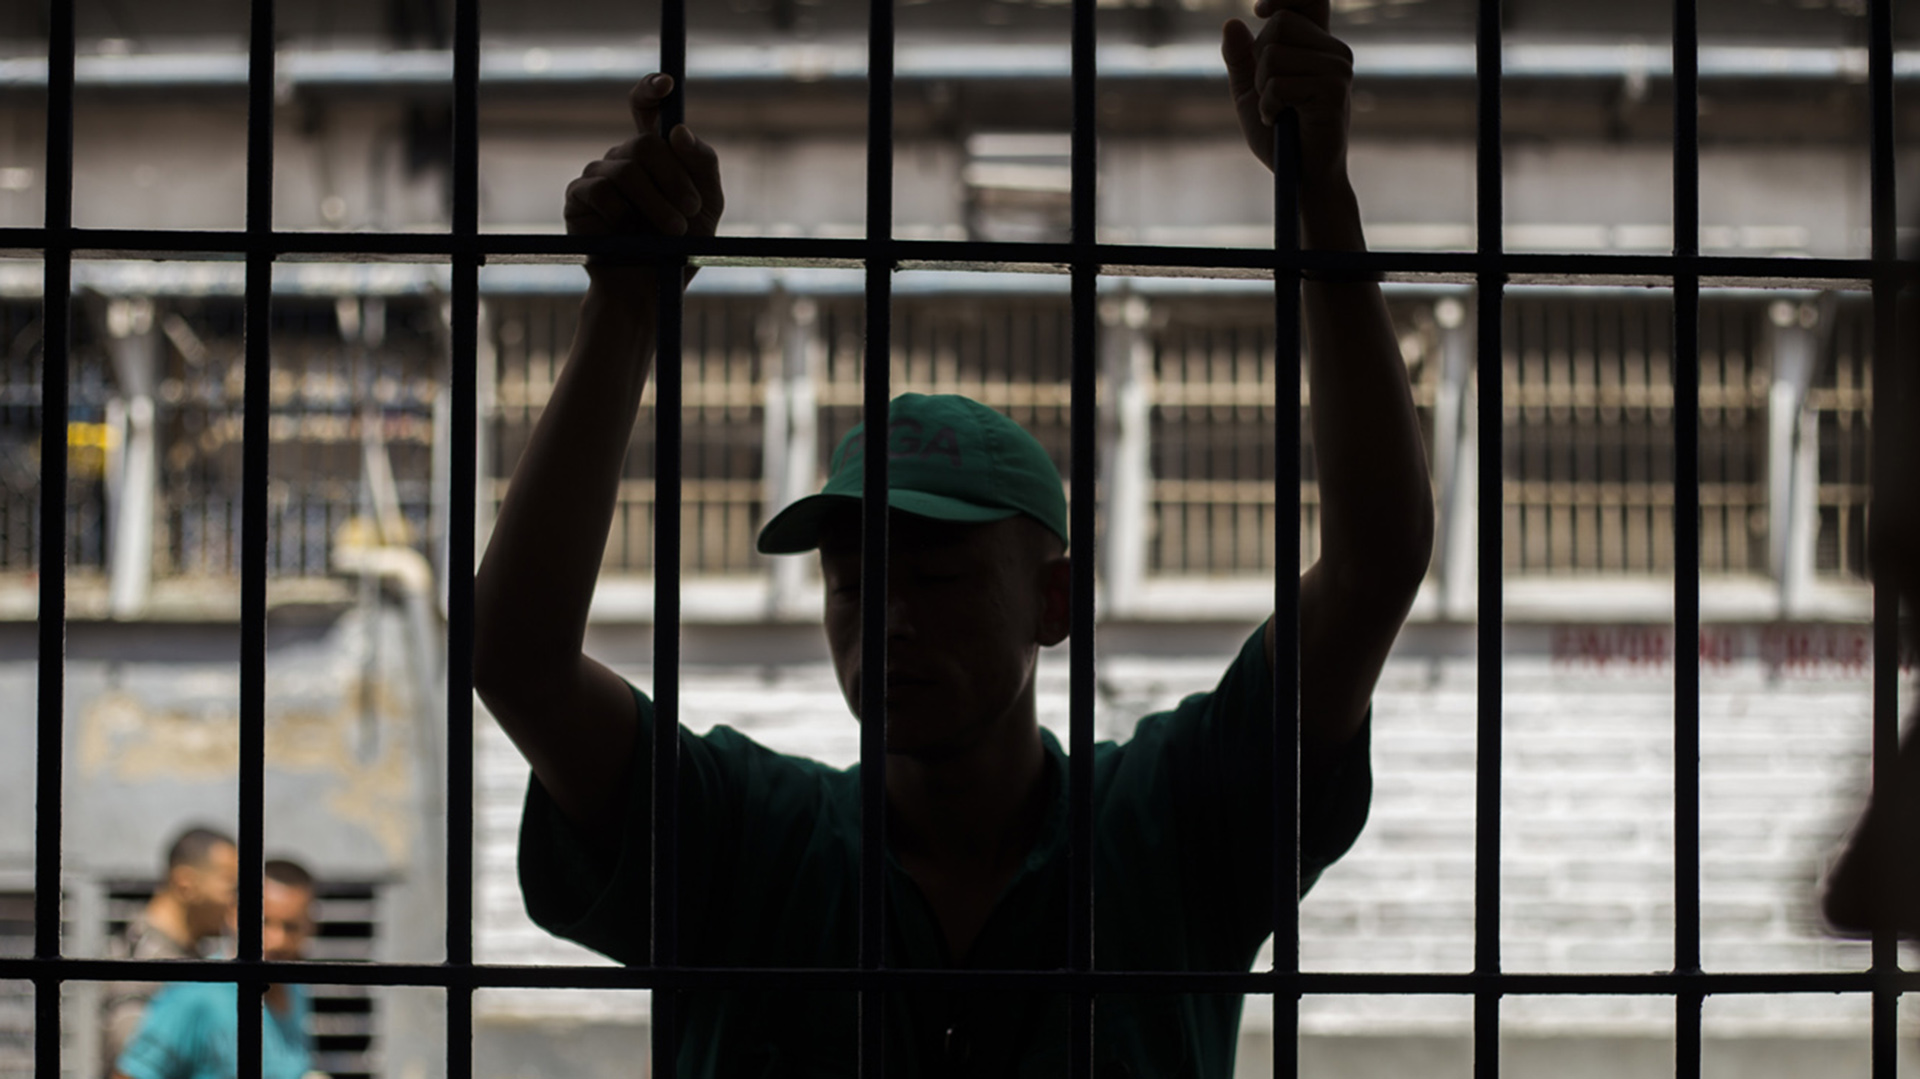 Jamundí Valle Prison, Colombia